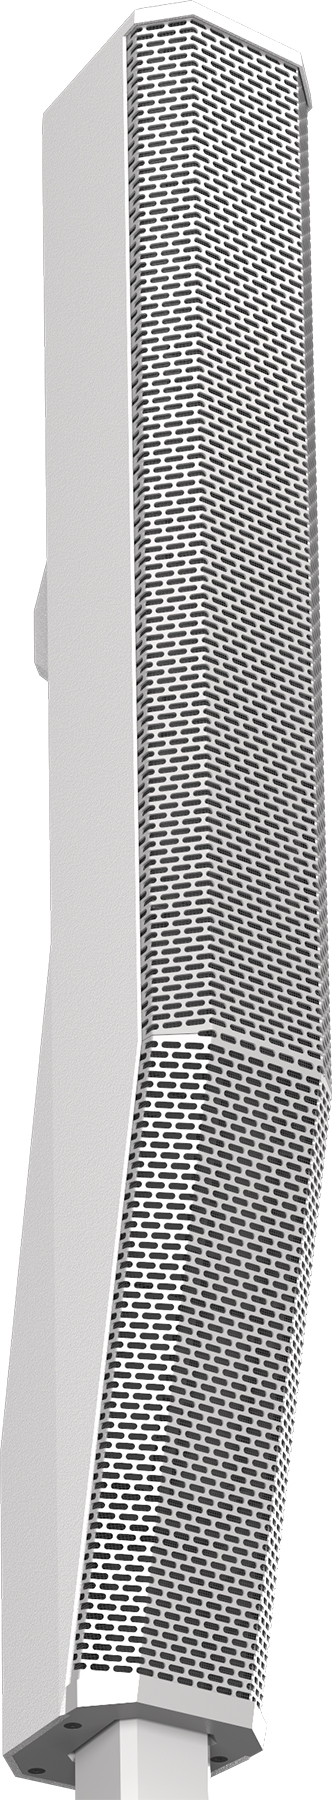 electro-voice-evolve50-tw--evolve-50-white-speaker-only.jpg